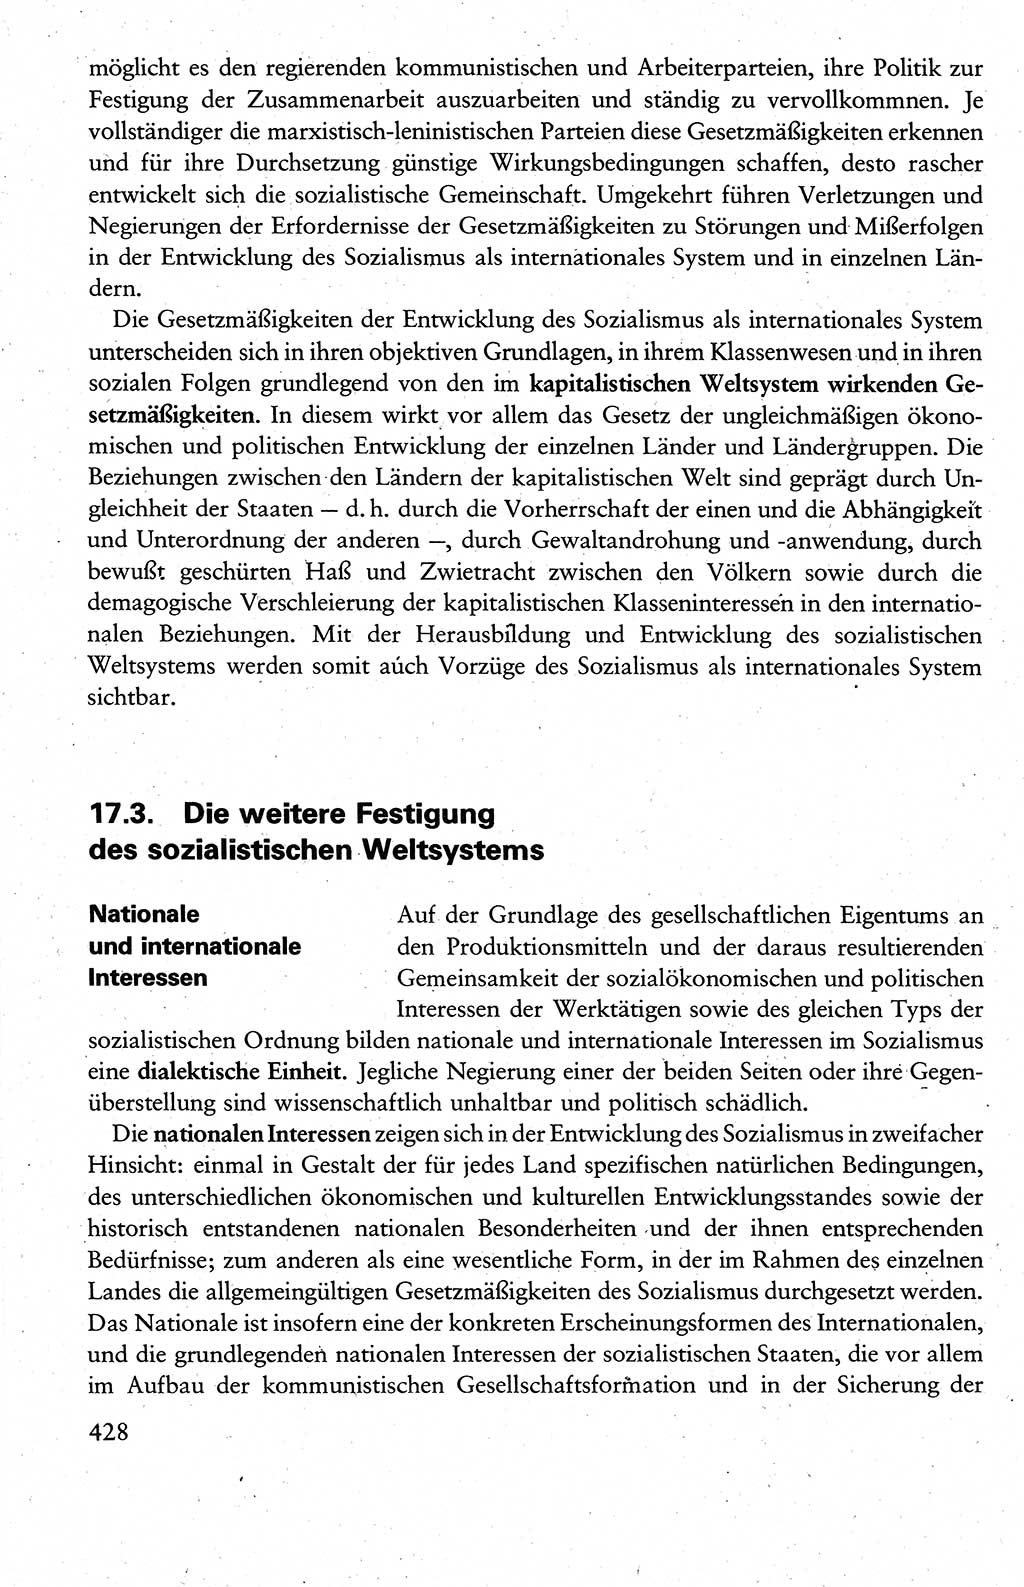 Wissenschaftlicher Kommunismus [Deutsche Demokratische Republik (DDR)], Lehrbuch für das marxistisch-leninistische Grundlagenstudium 1983, Seite 428 (Wiss. Komm. DDR Lb. 1983, S. 428)